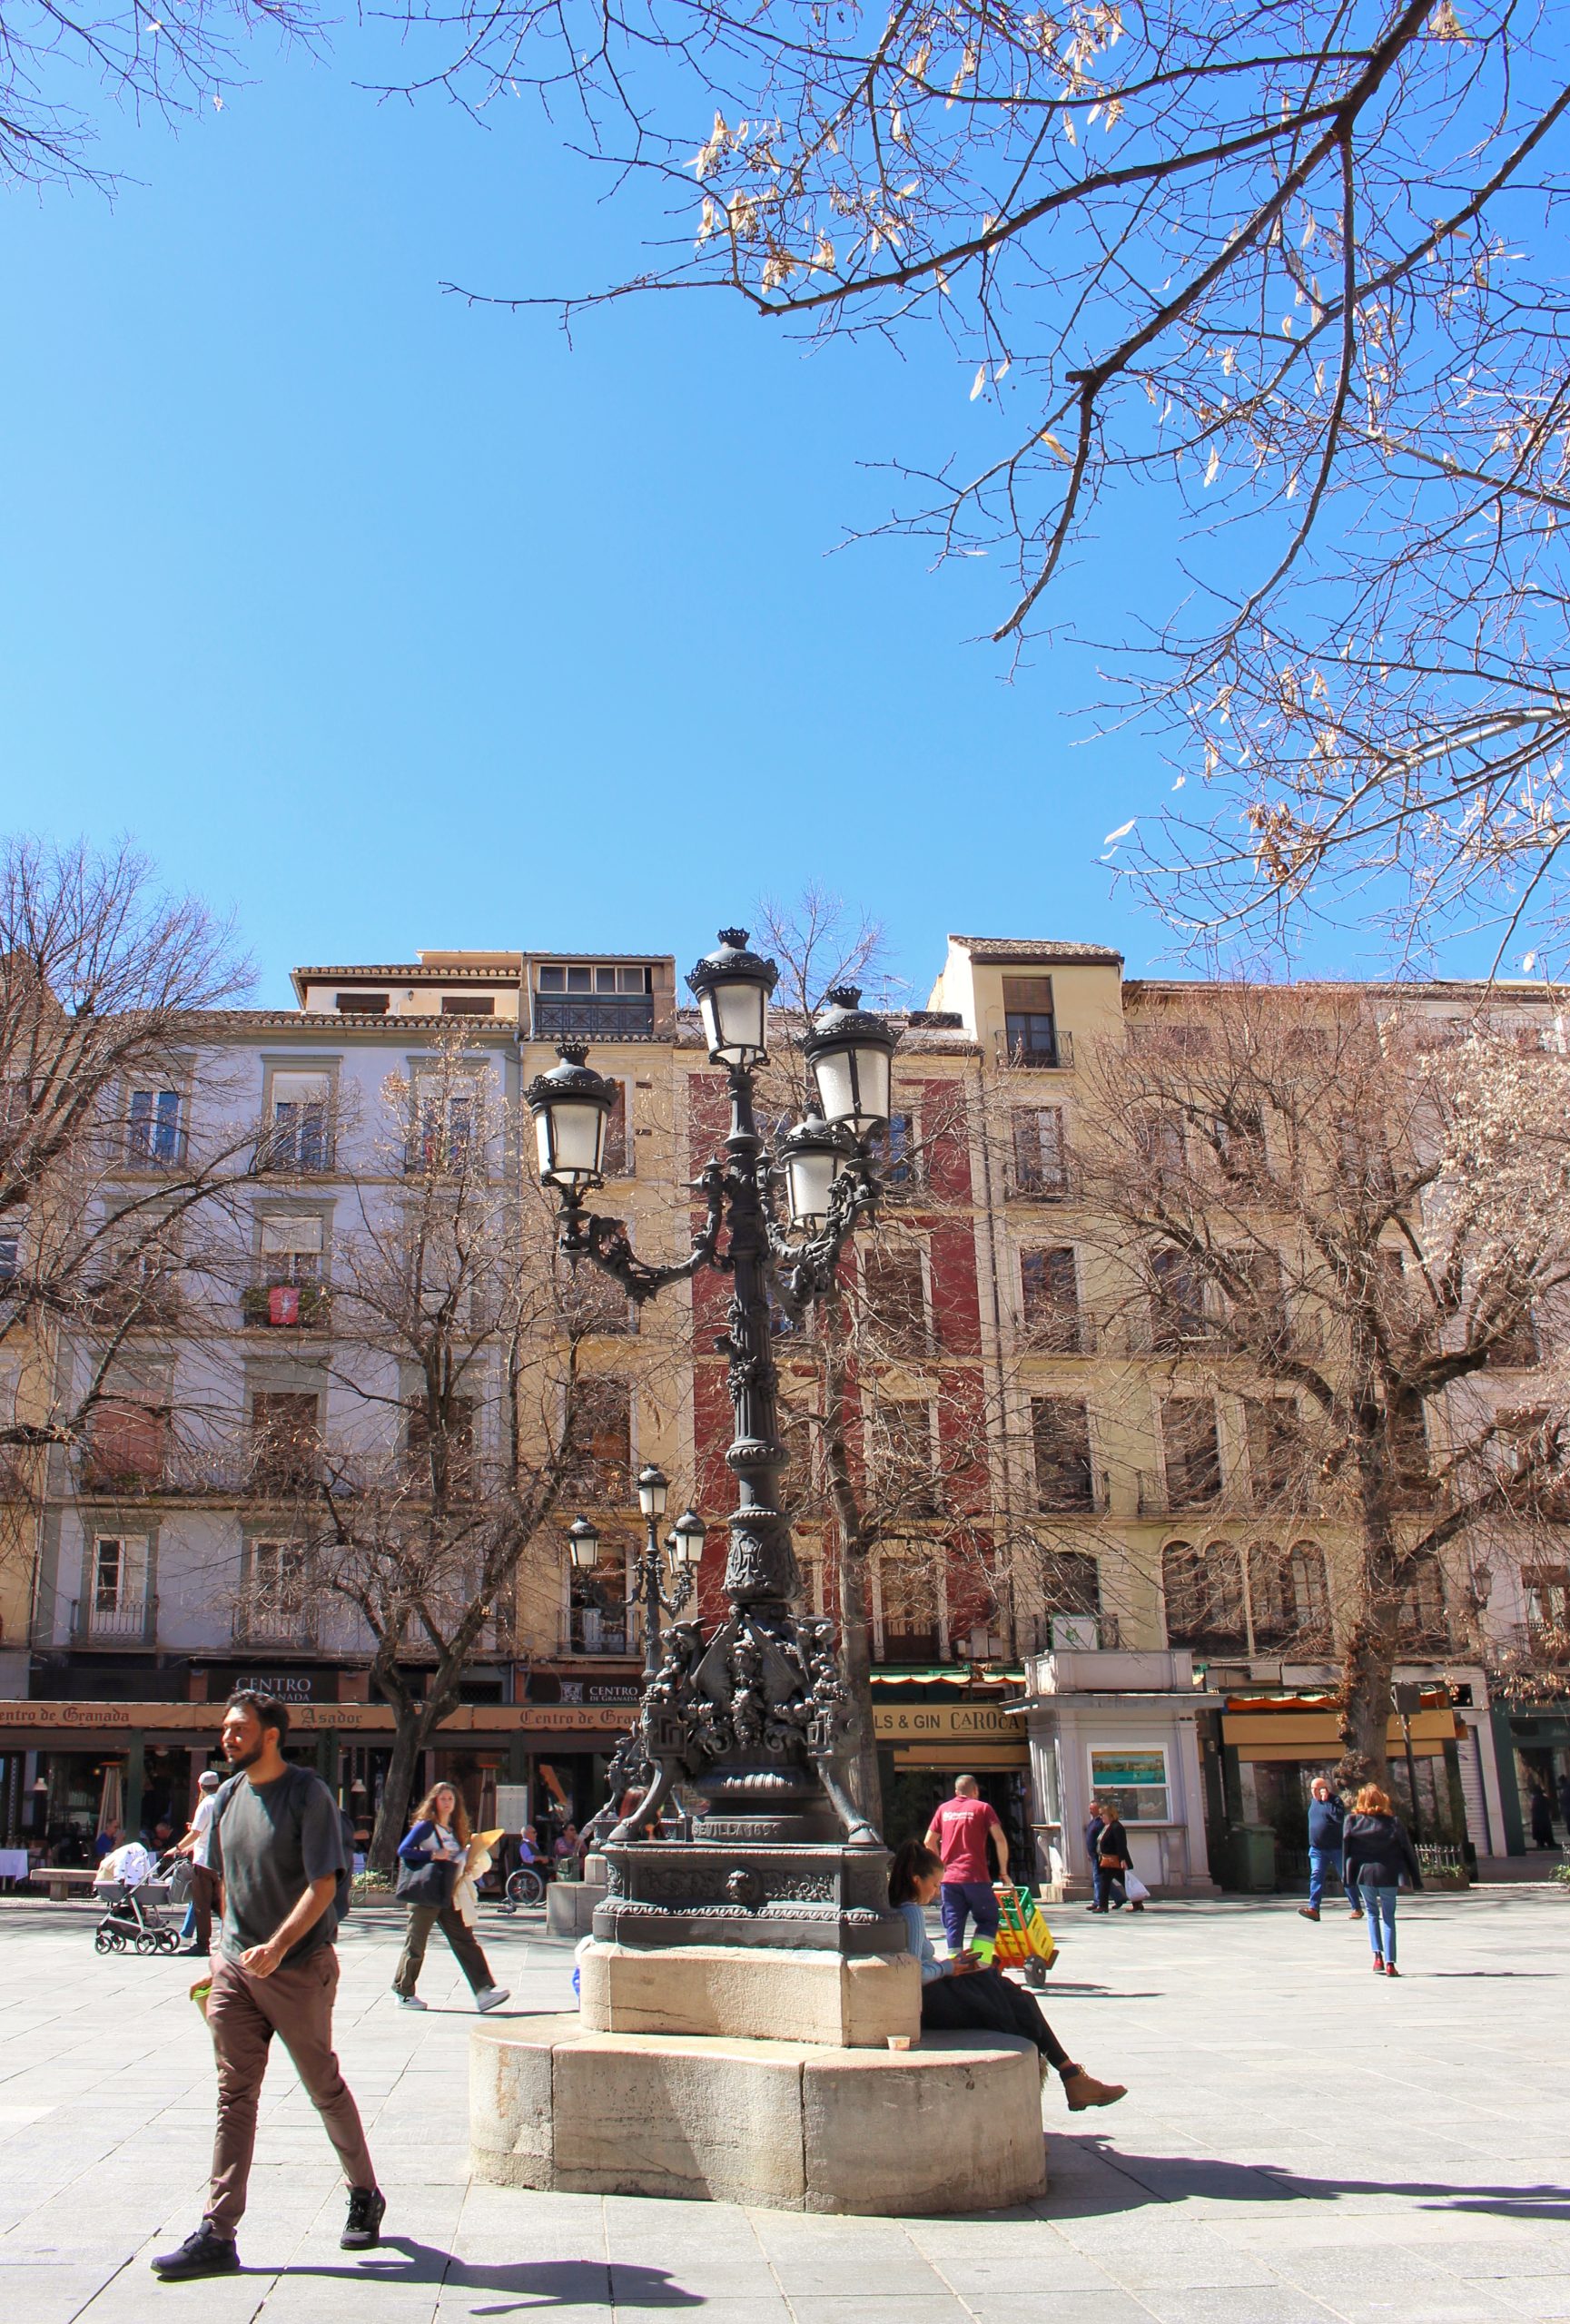 A plaza in Granada